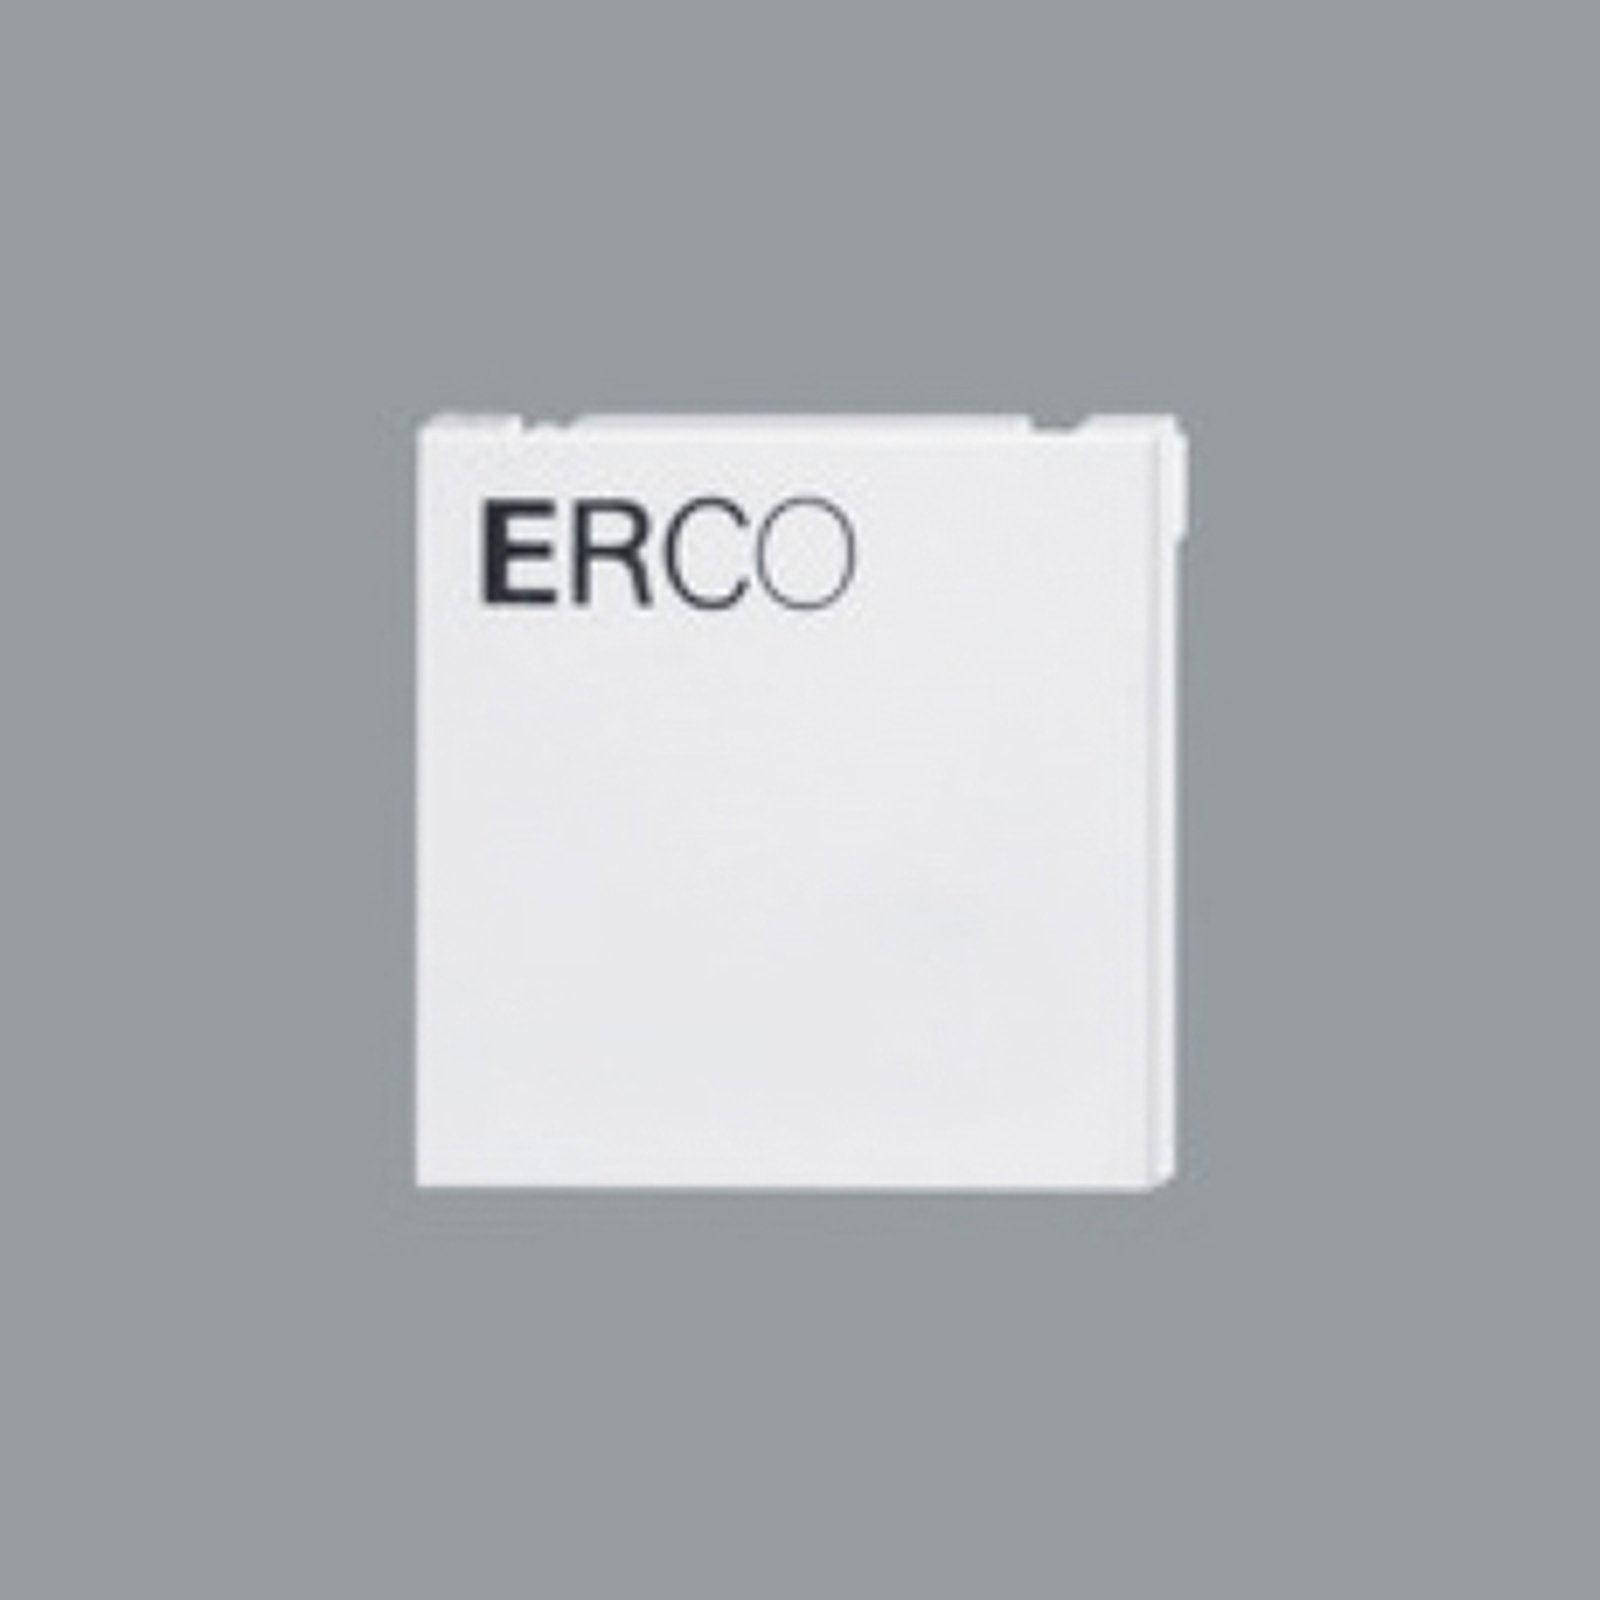 ERCO eindplaat voor 3-fase rail, wit